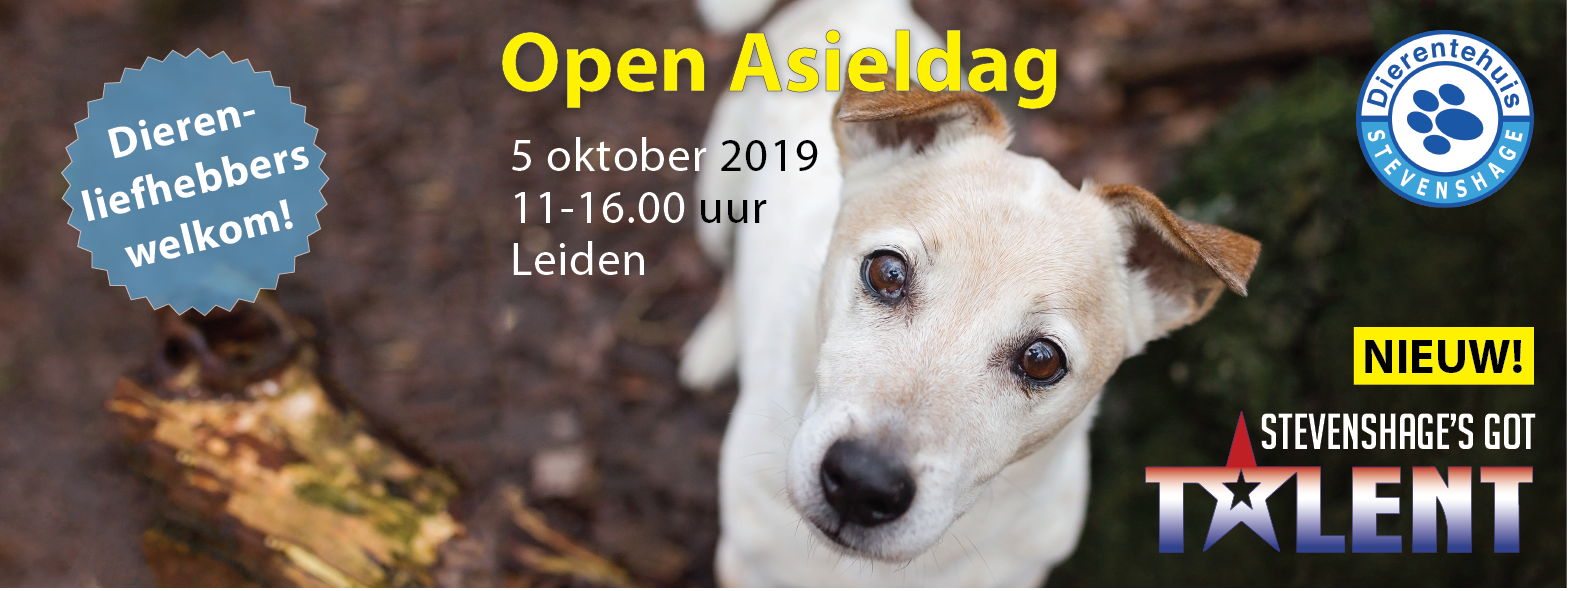 Open Asieldag op zaterdag 5 oktober 2019